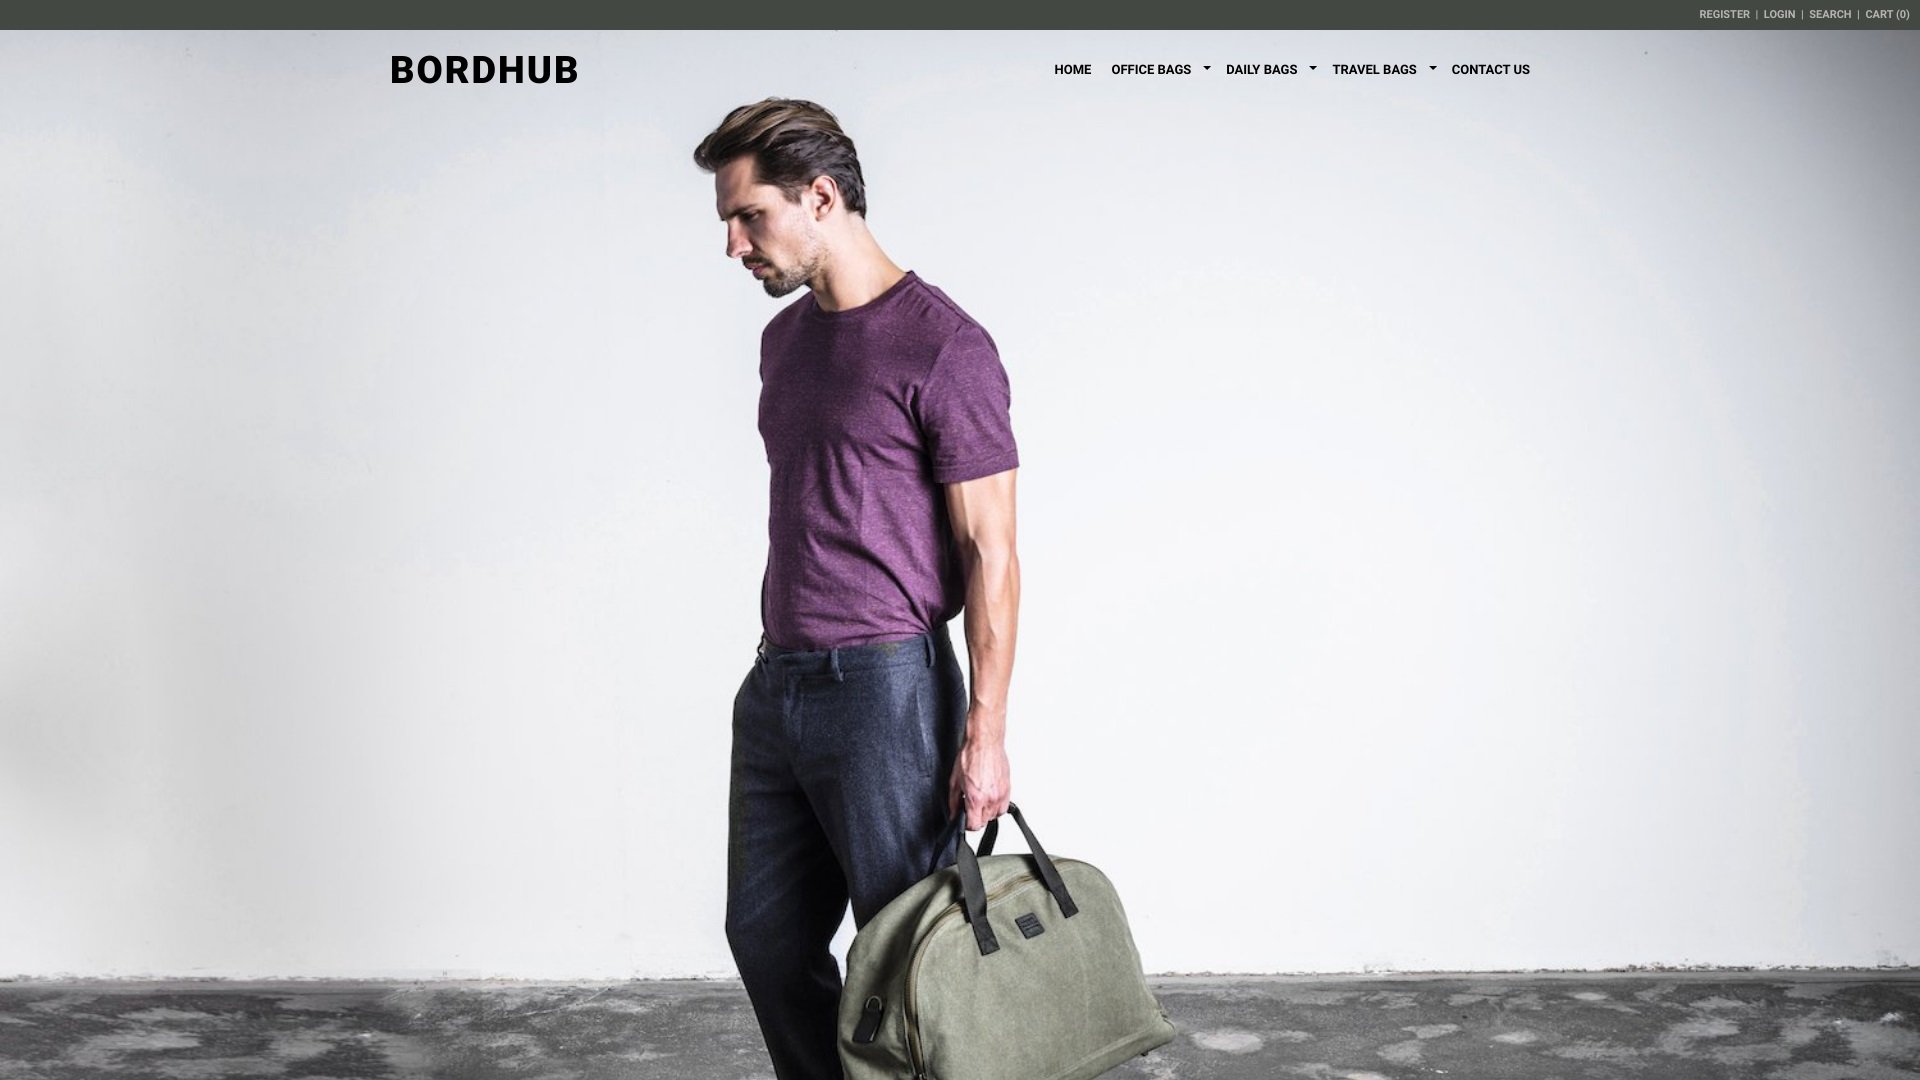 Bordhub located at bordhub.com